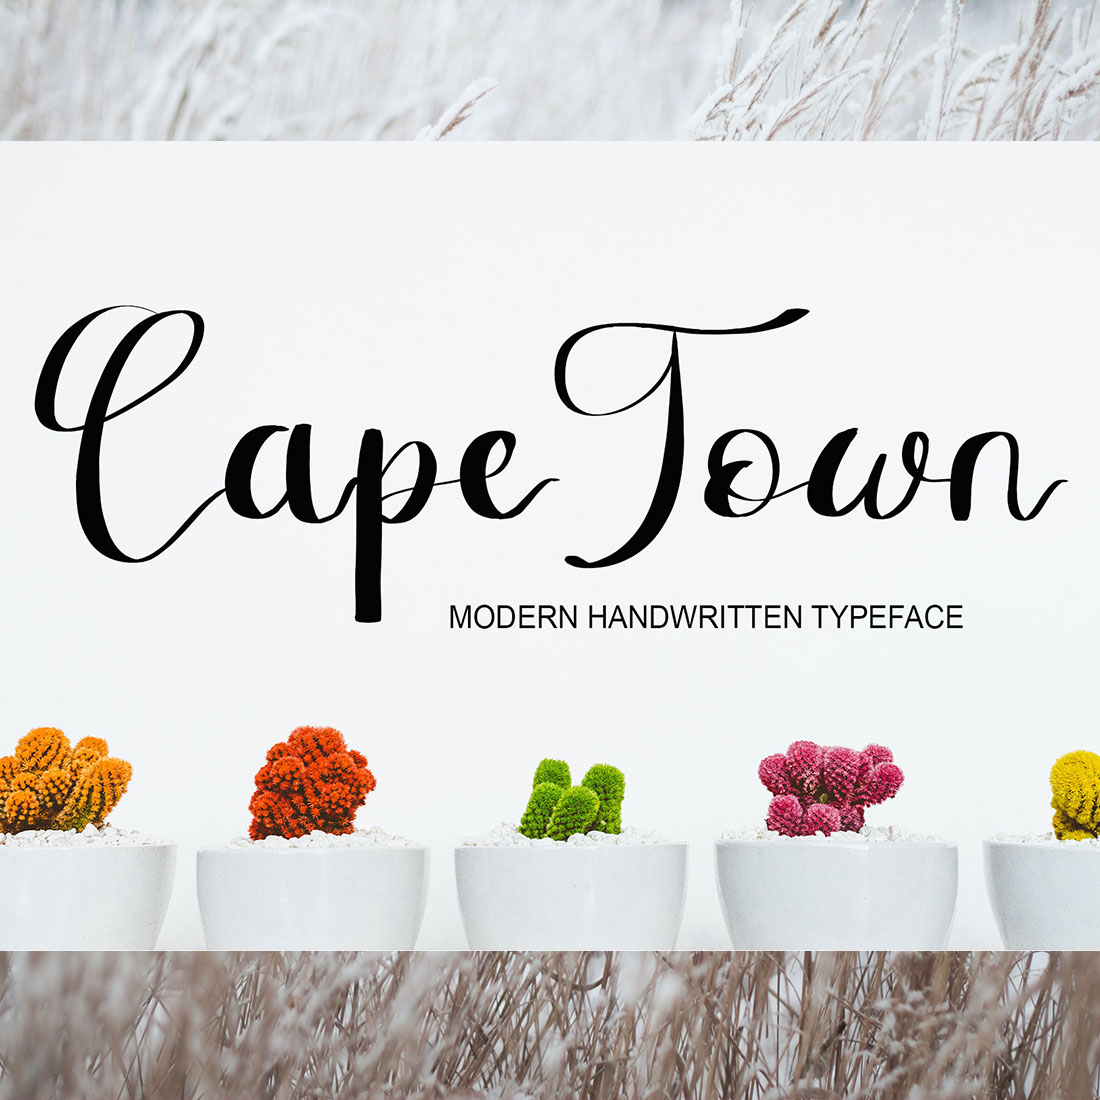 Font Script CapeTown Design cover image.